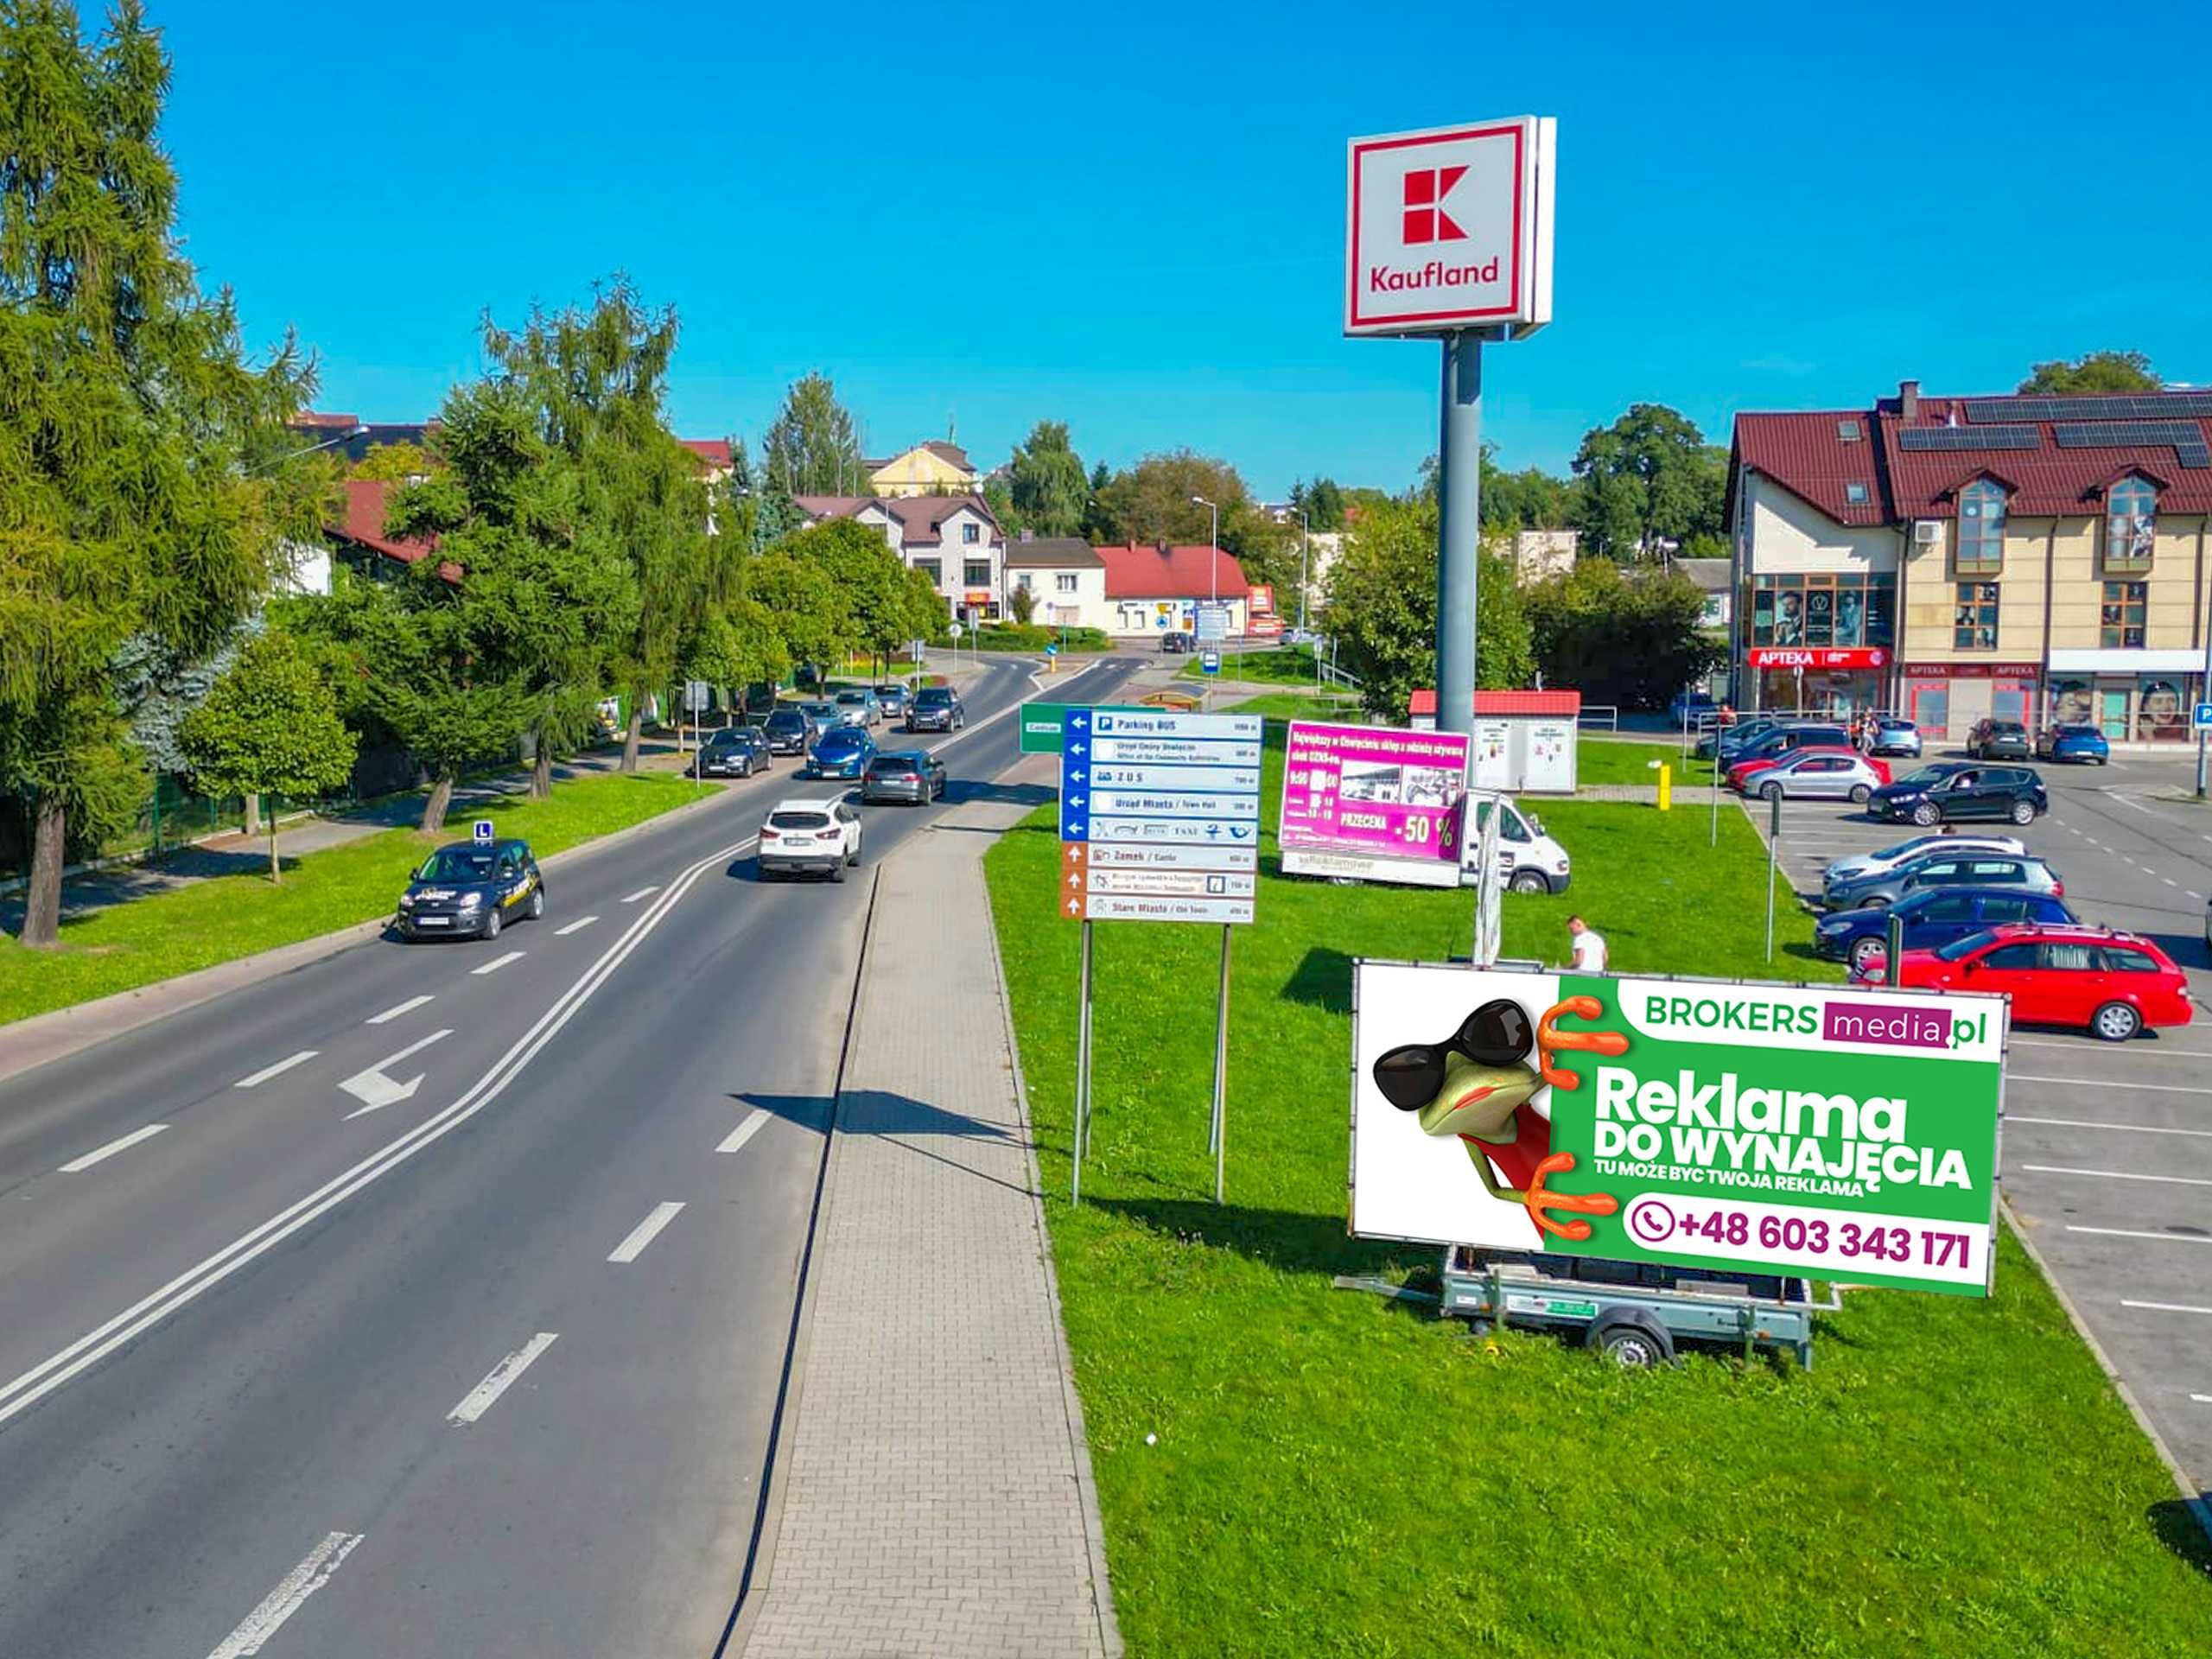 REKLAMA - Billboard Mobilny, Przyczepa Reklamowa